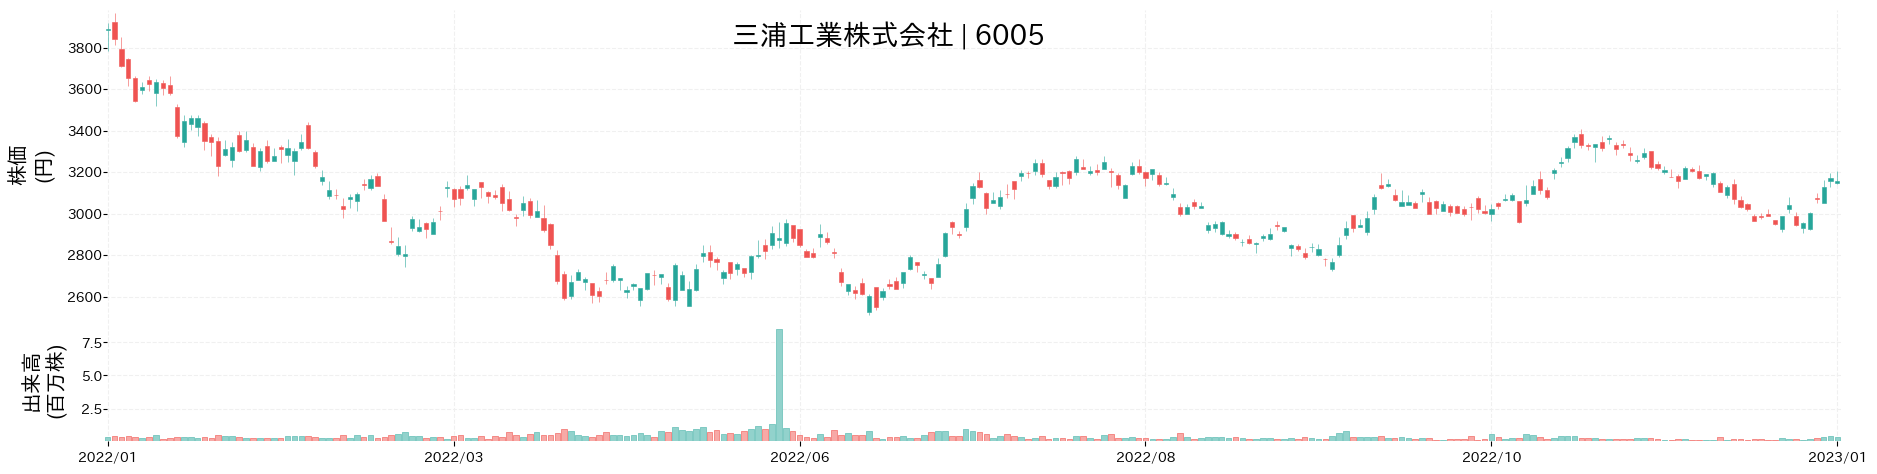 三浦工業の株価推移(2022)